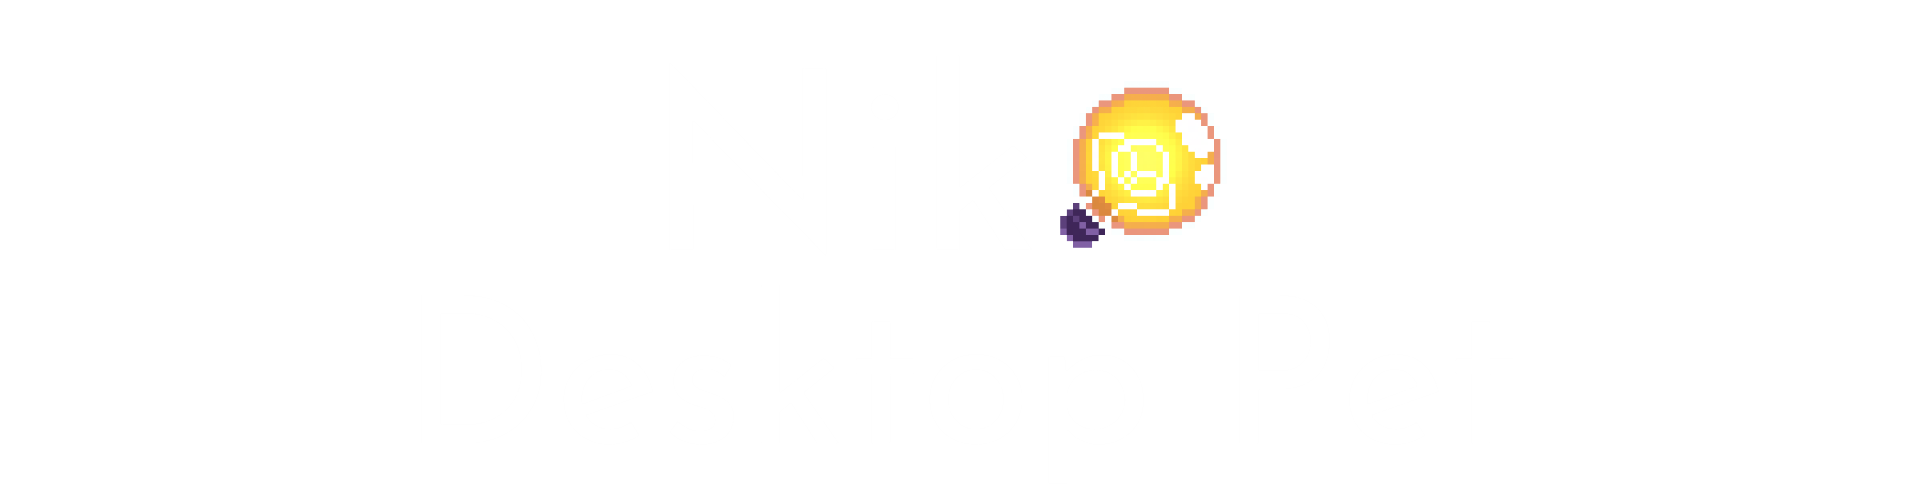 Niko Desktop Pet